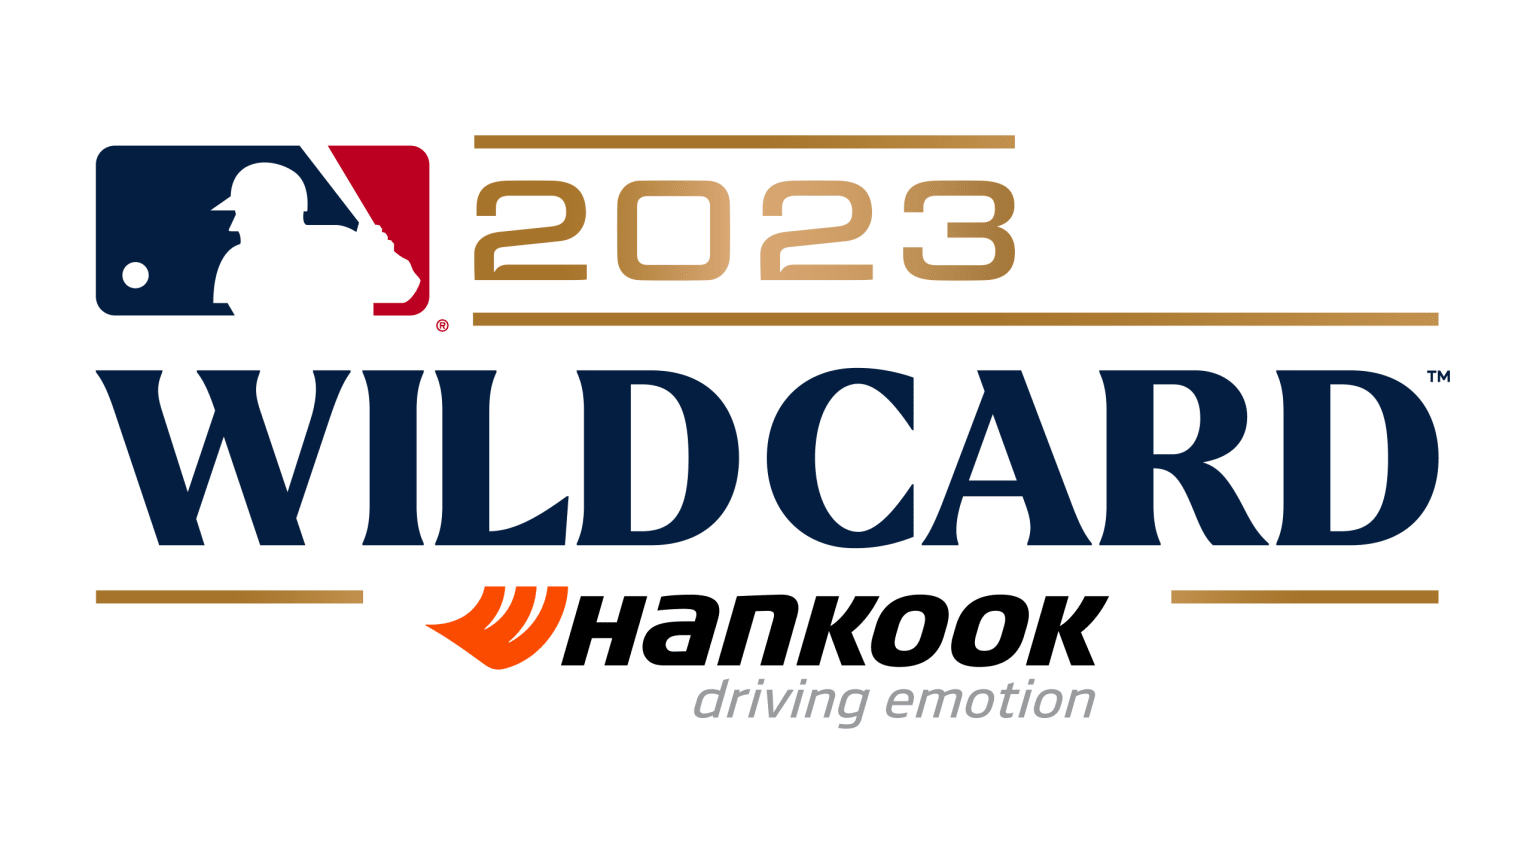 2023 wild card games